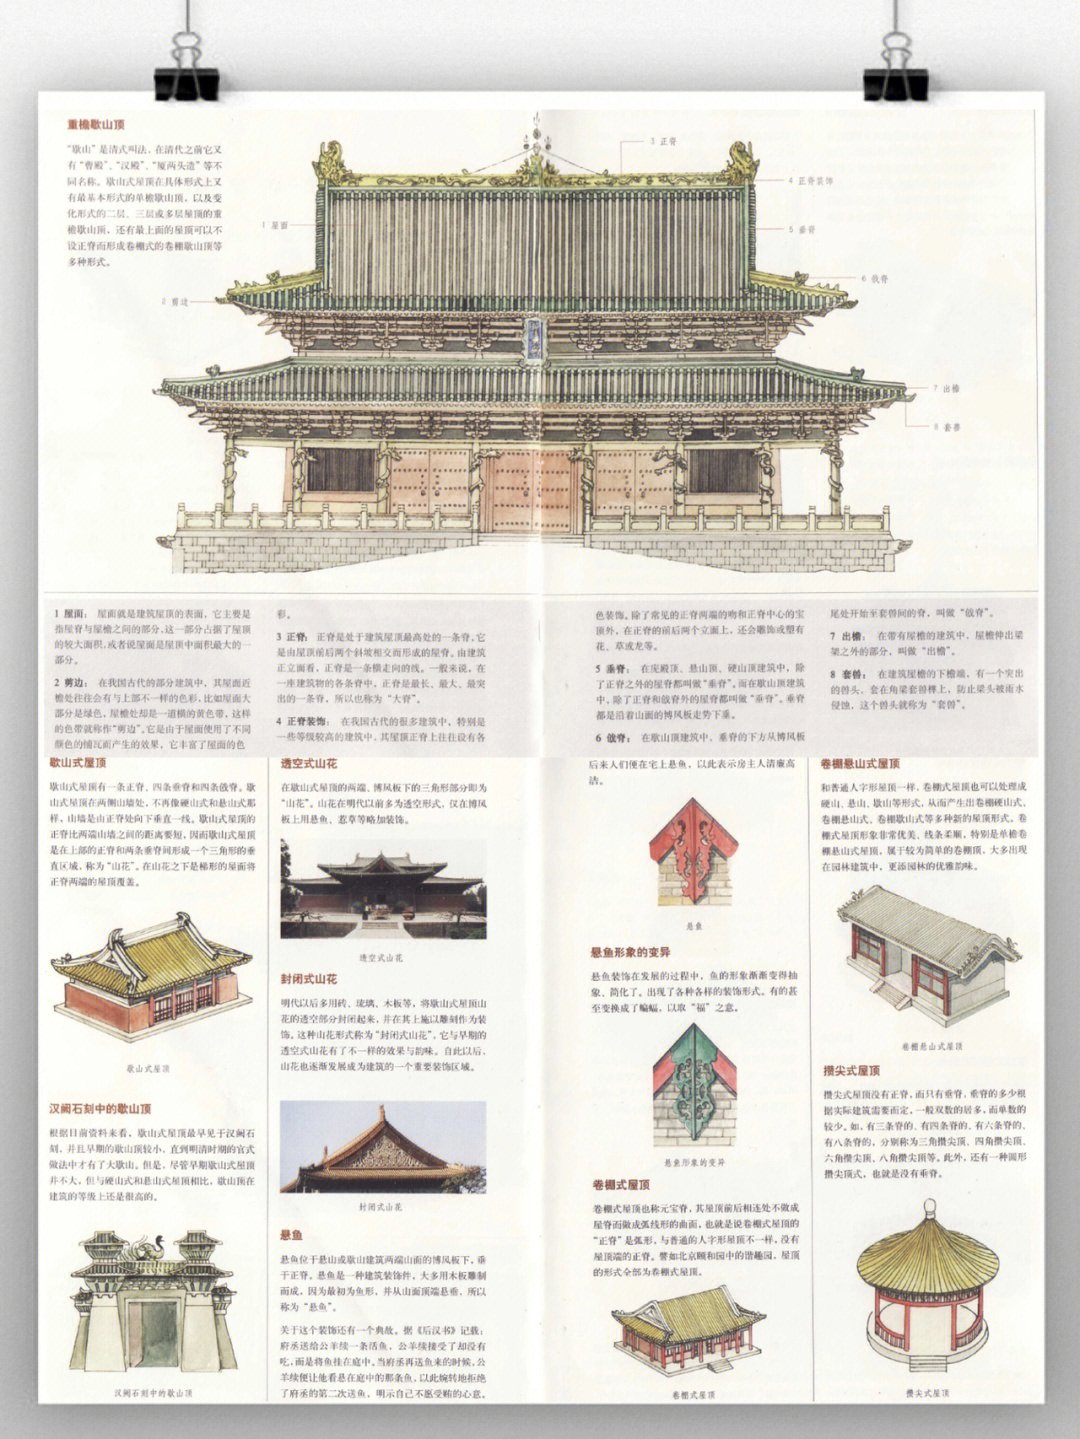 图解中国古建筑格式屋顶样式与特点